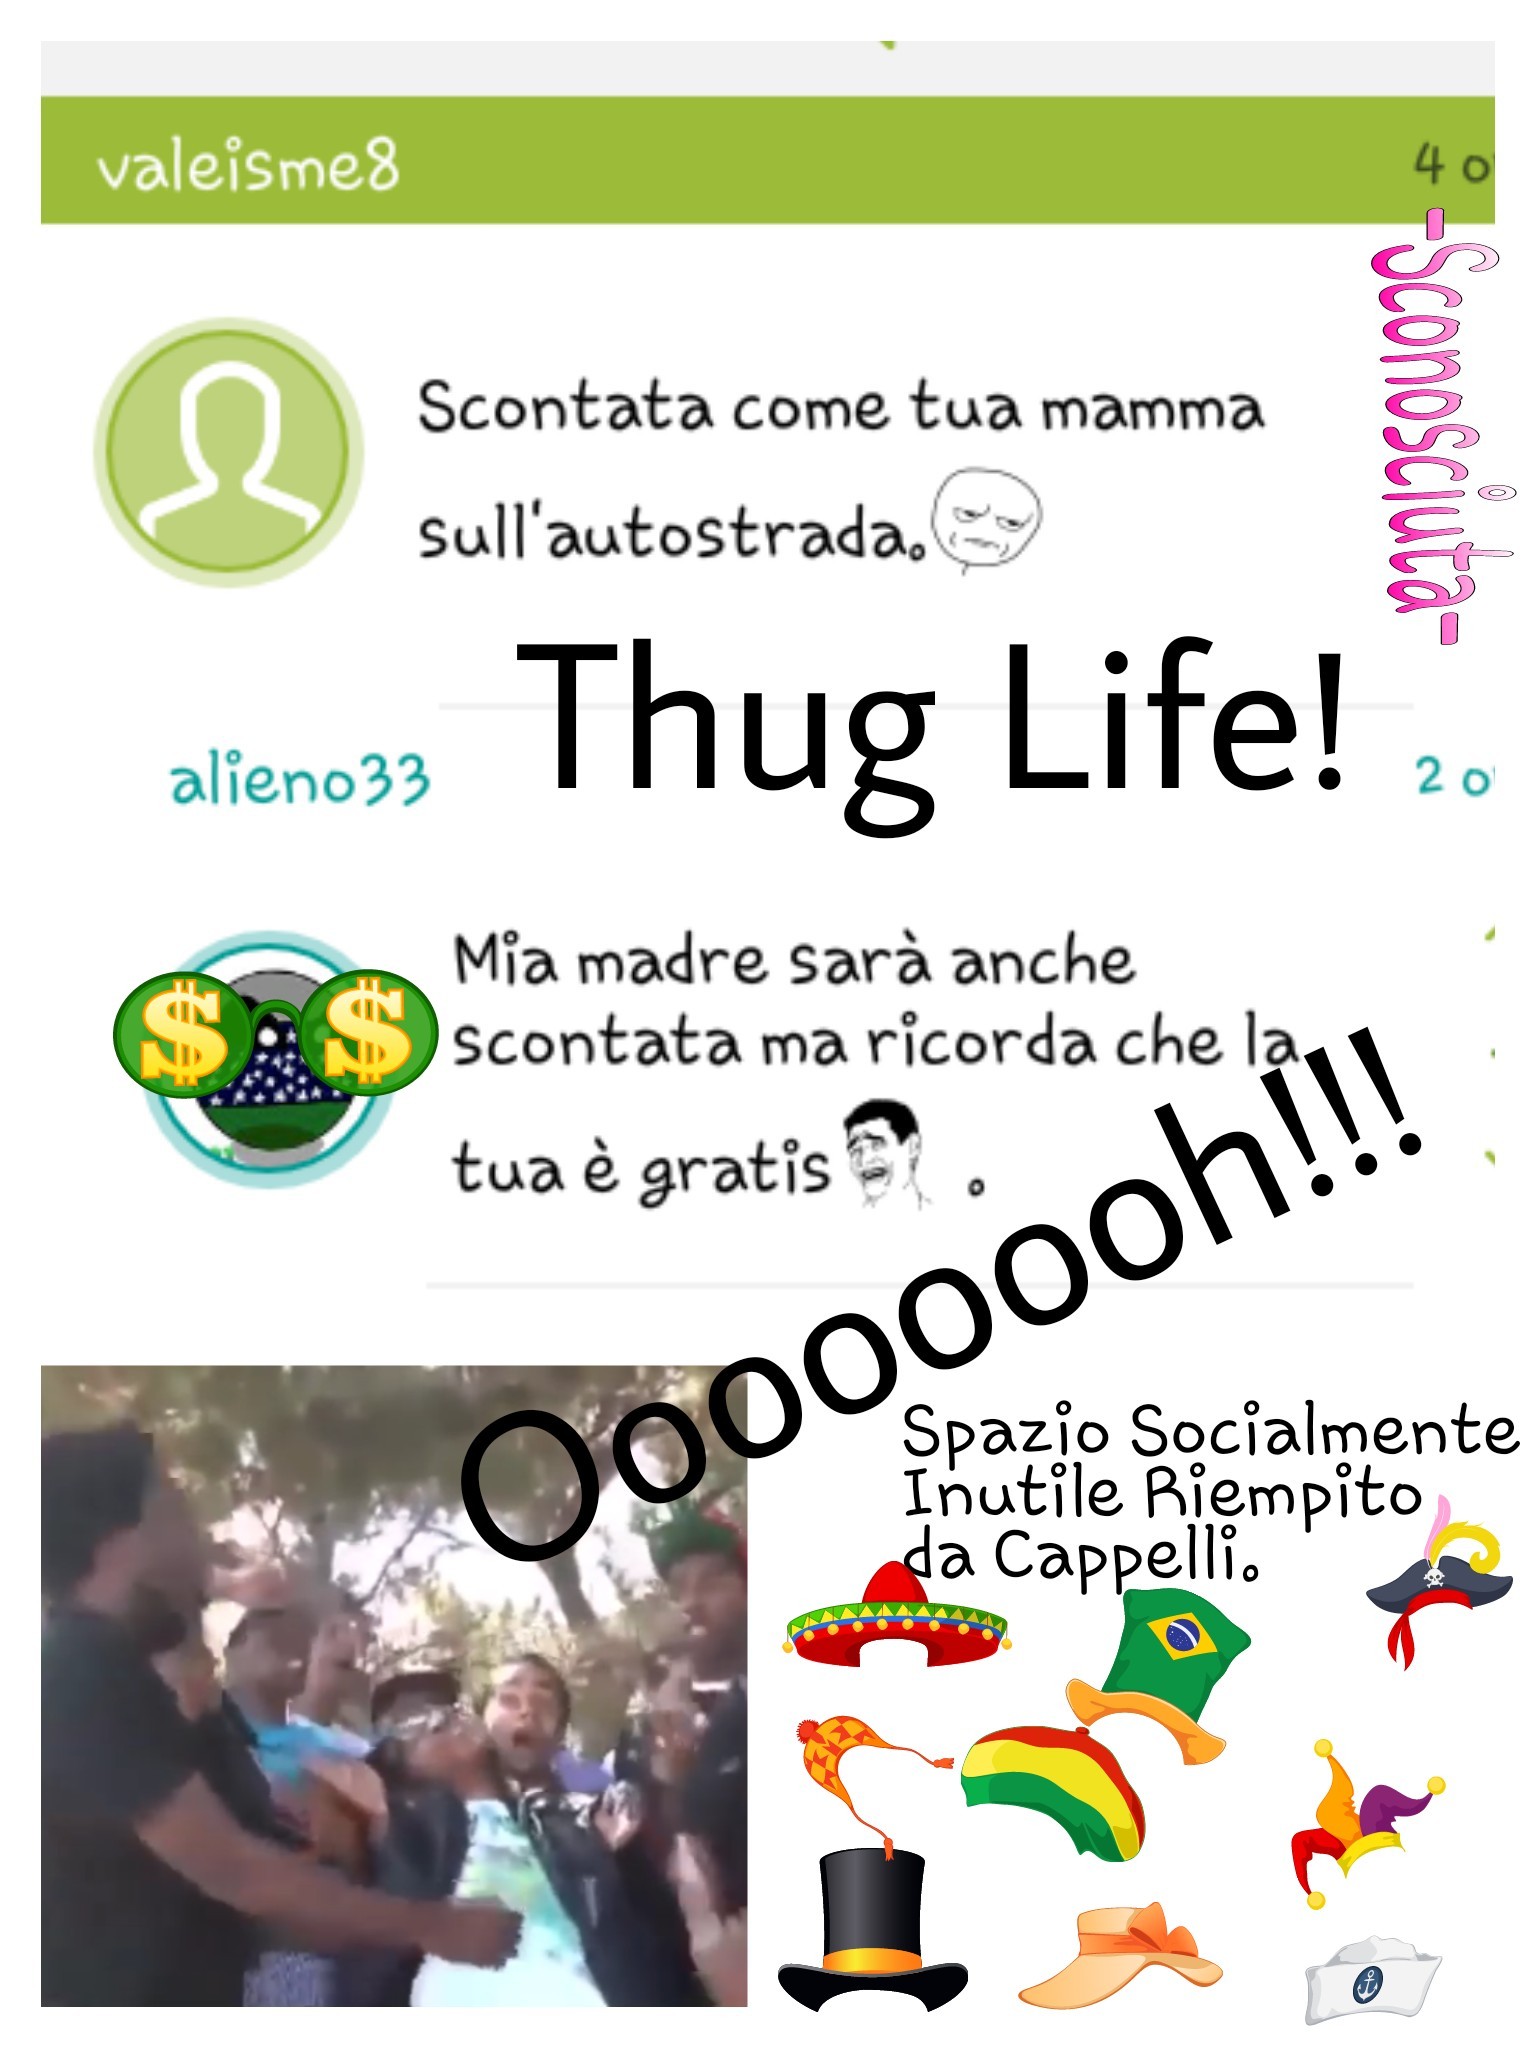 Thug Life Alieno33!!! - meme